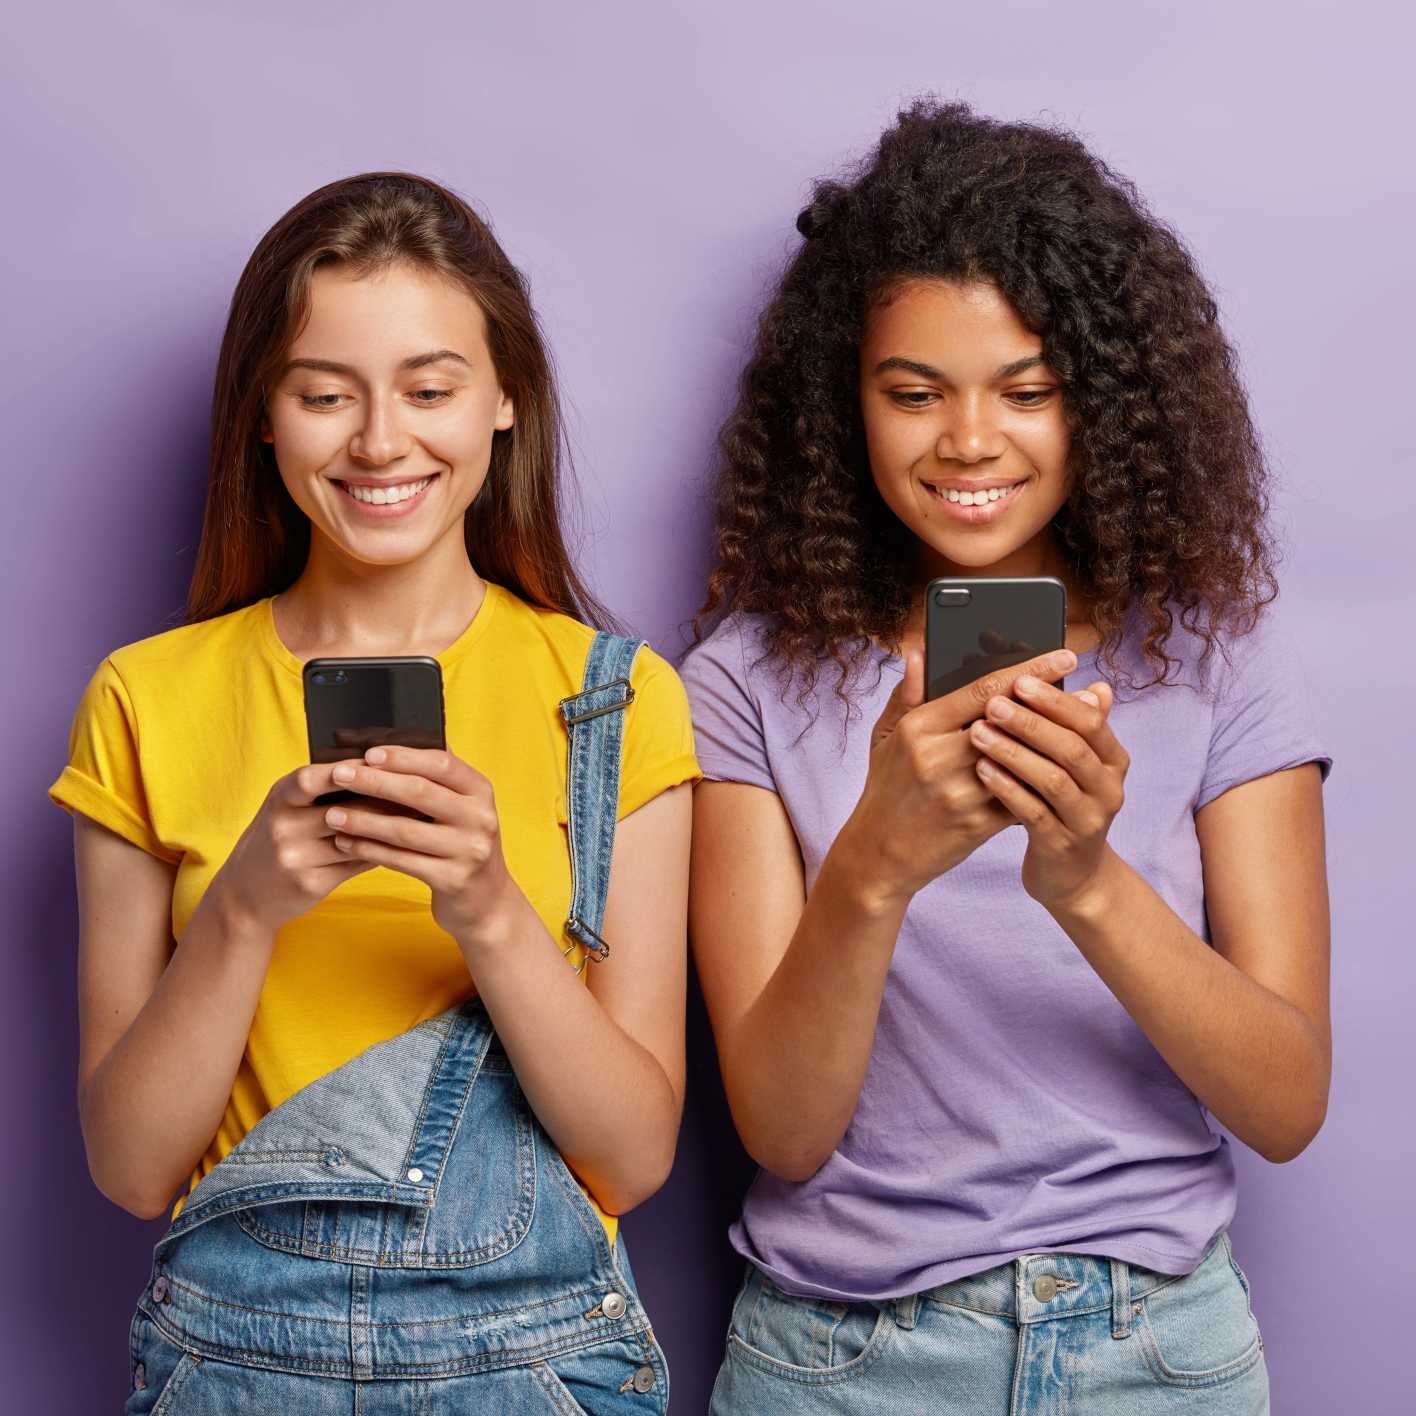 Zwei junge Frauen schauen lächelnd auf ihr Smartphone